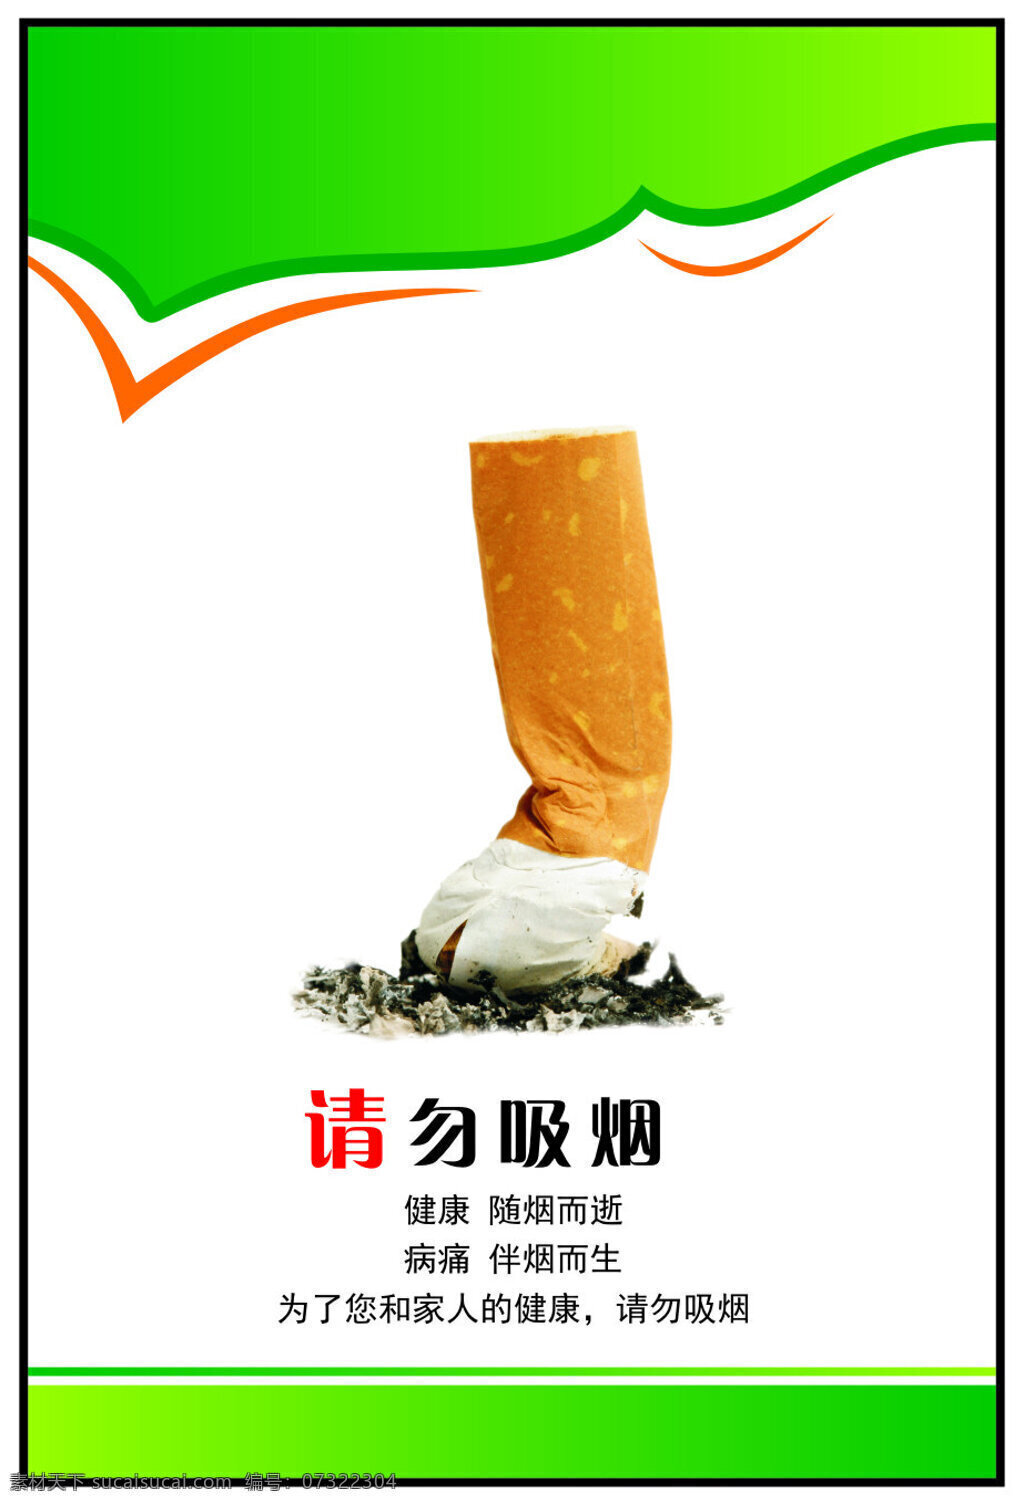 请勿吸烟 标志 请勿吸烟标志 绿色 清新 白色